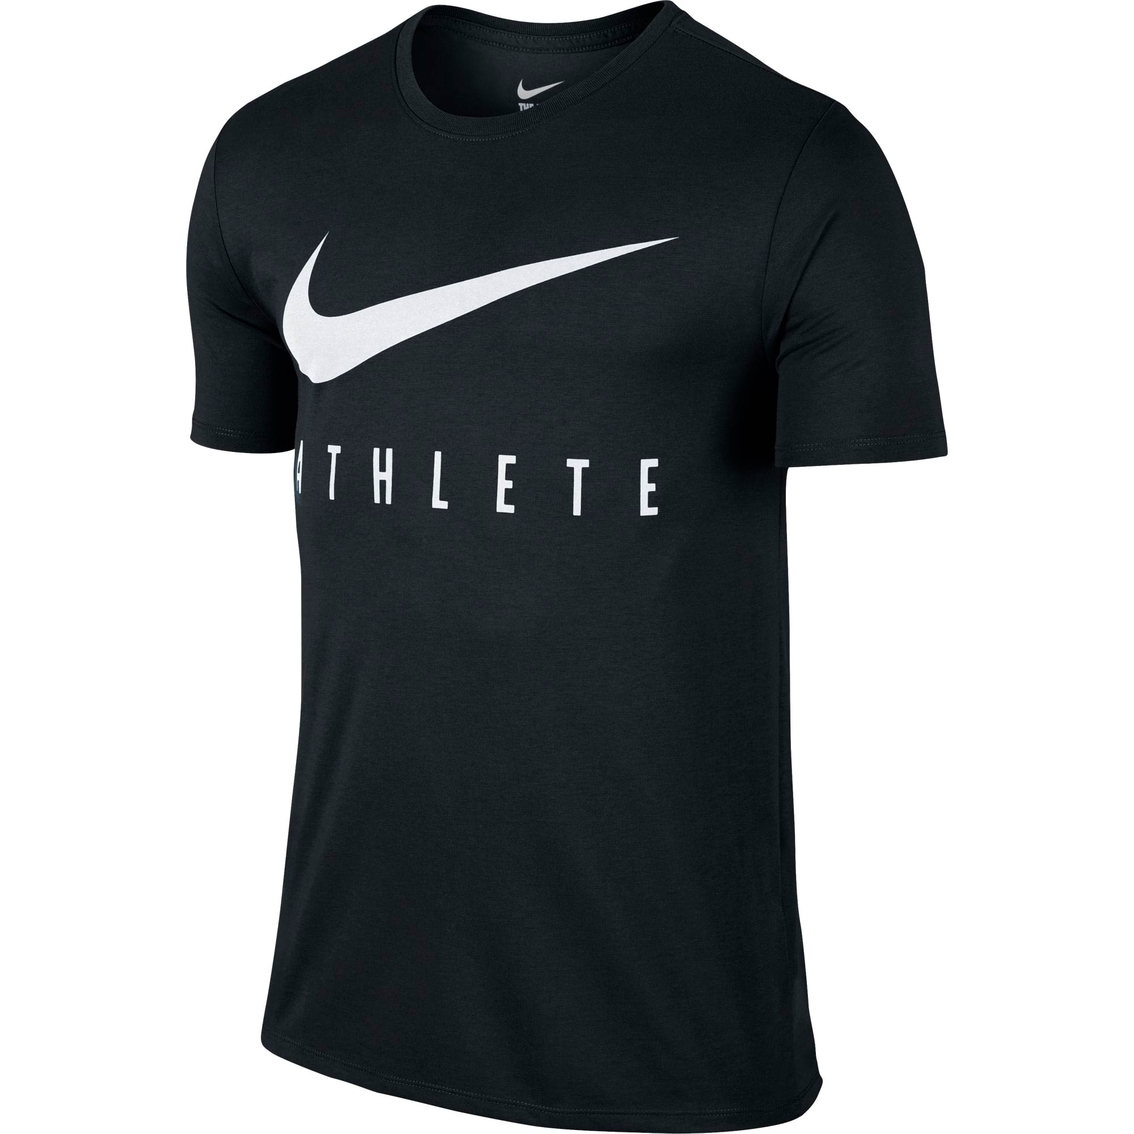 Buy nike athlete shirt> OFF-74%